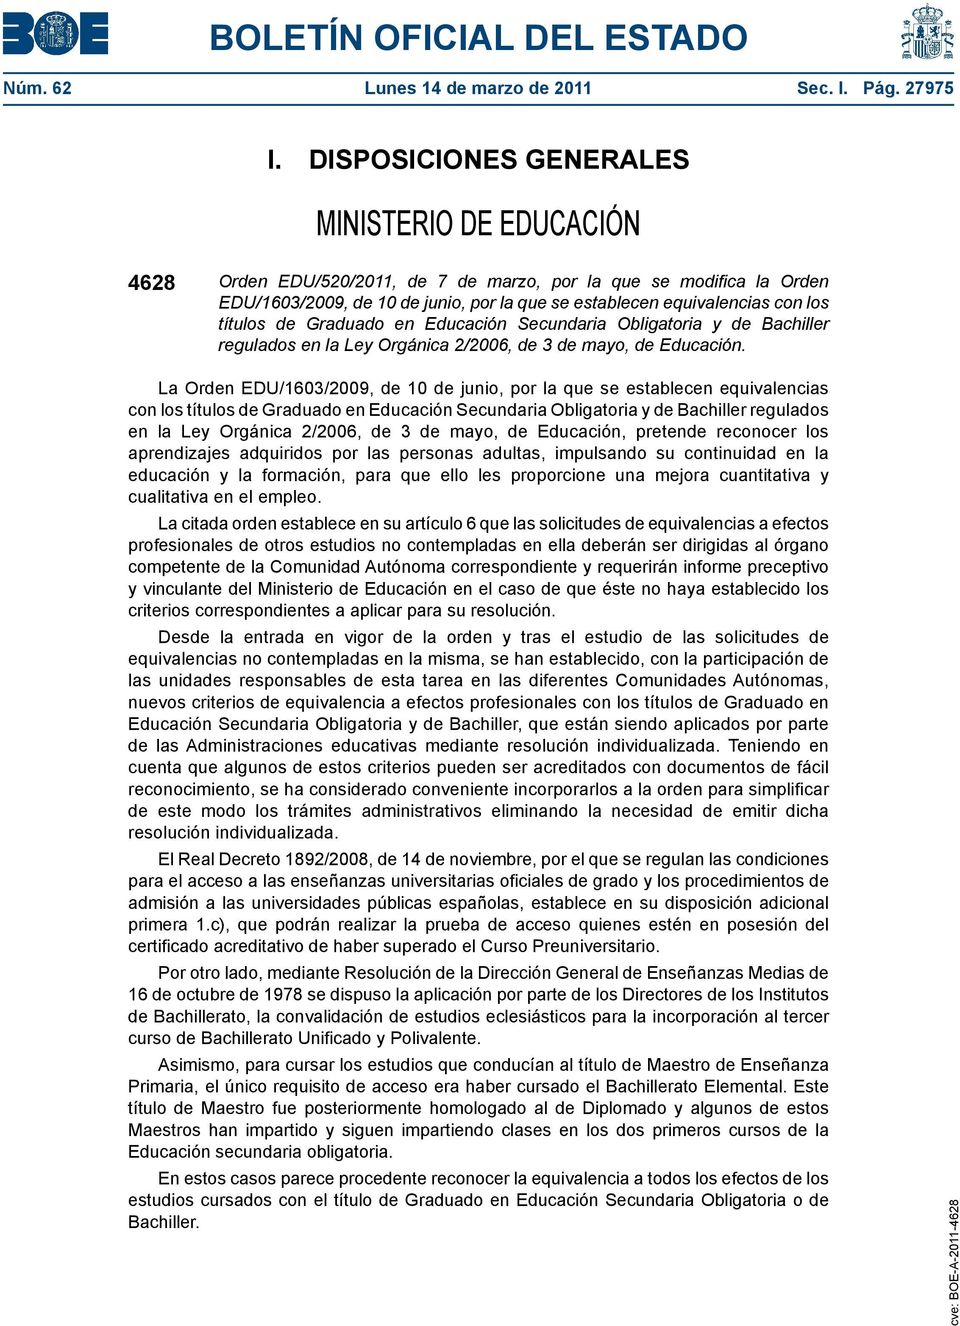 títulos de Graduado en Educación Secundaria Obligatoria y de Bachiller regulados en la Ley Orgánica 2/2006, de 3 de mayo, de Educación.